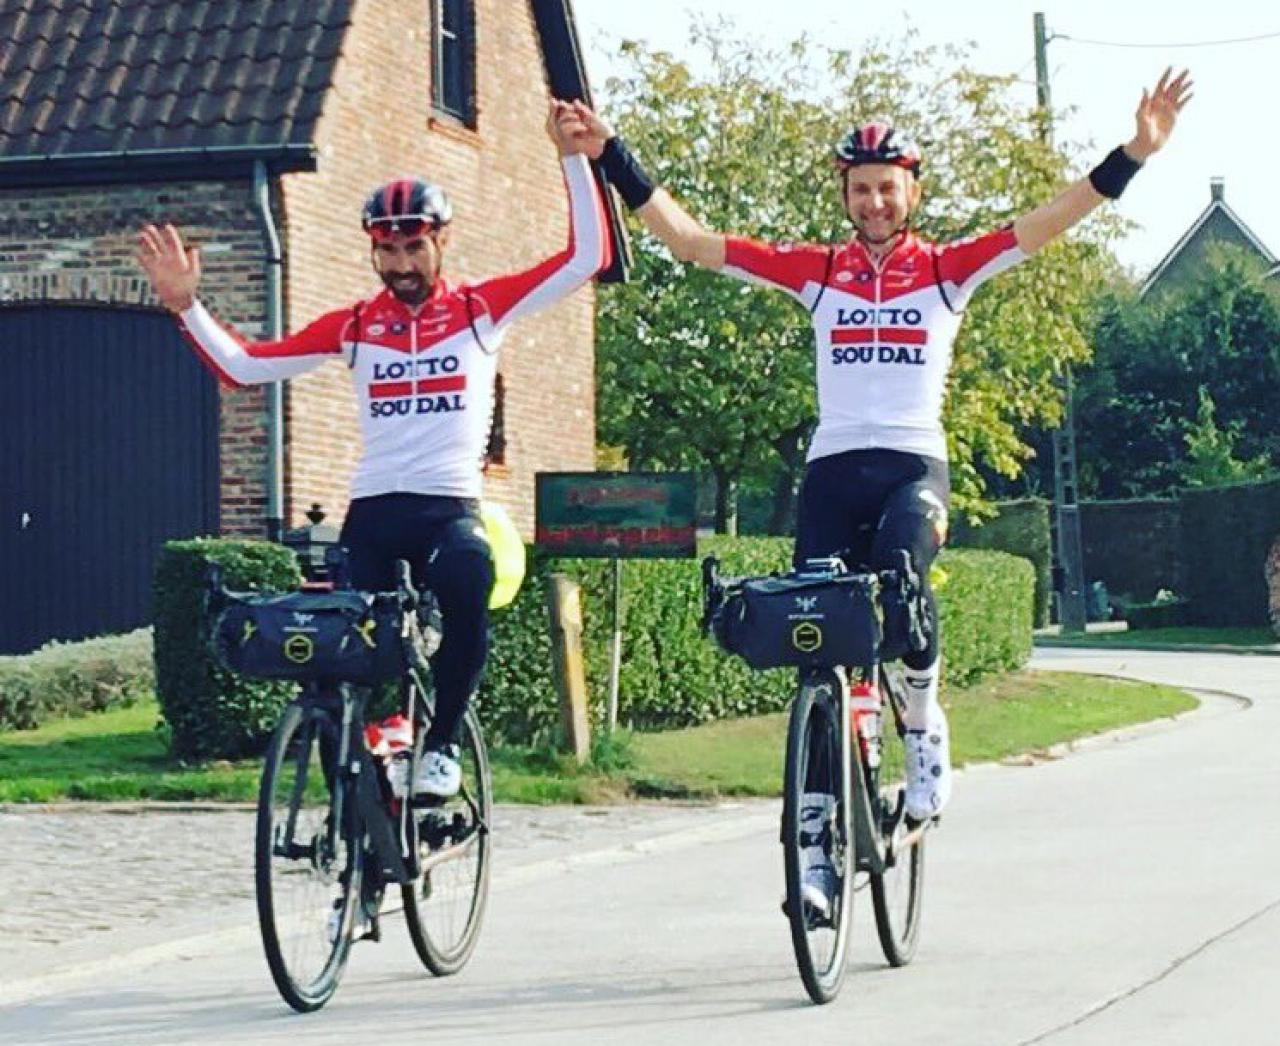 Bliver værre Bevidst bemærkede ikke Thomas De Gendt and Tim Wellens finish bikepacking trip home from Il  Lombardia | road.cc